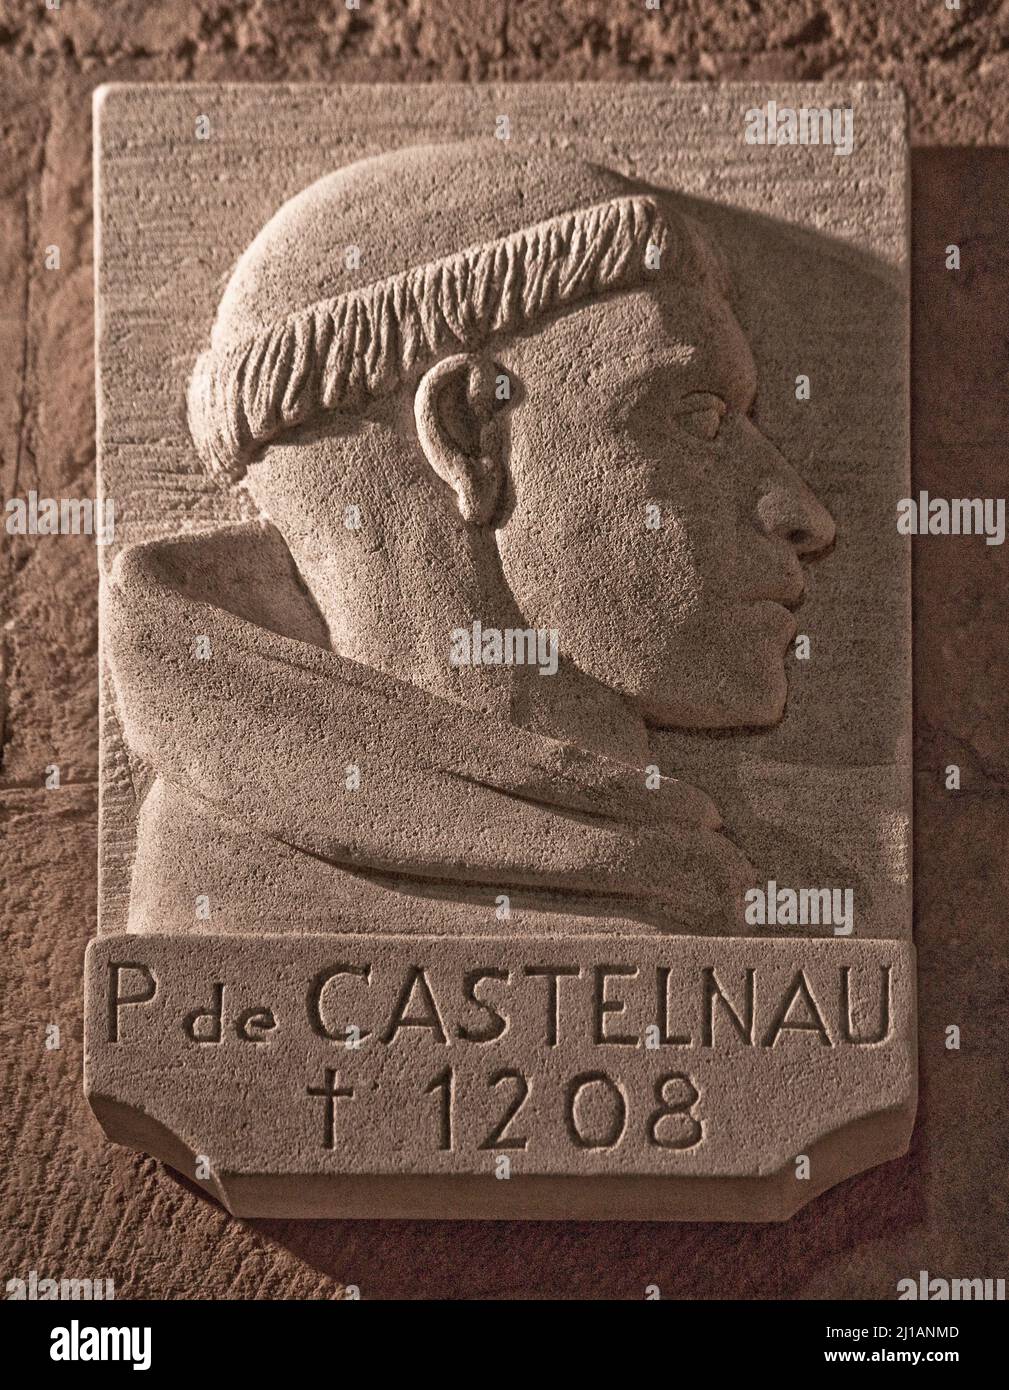 Frankr St-Gilles-du-Gard Abteikirche 60057 Porträt des Pierre de Castelnau als päpstlicher Legat 1208 dortselbst ermordet dies war Auslöser für den Al Stock Photo